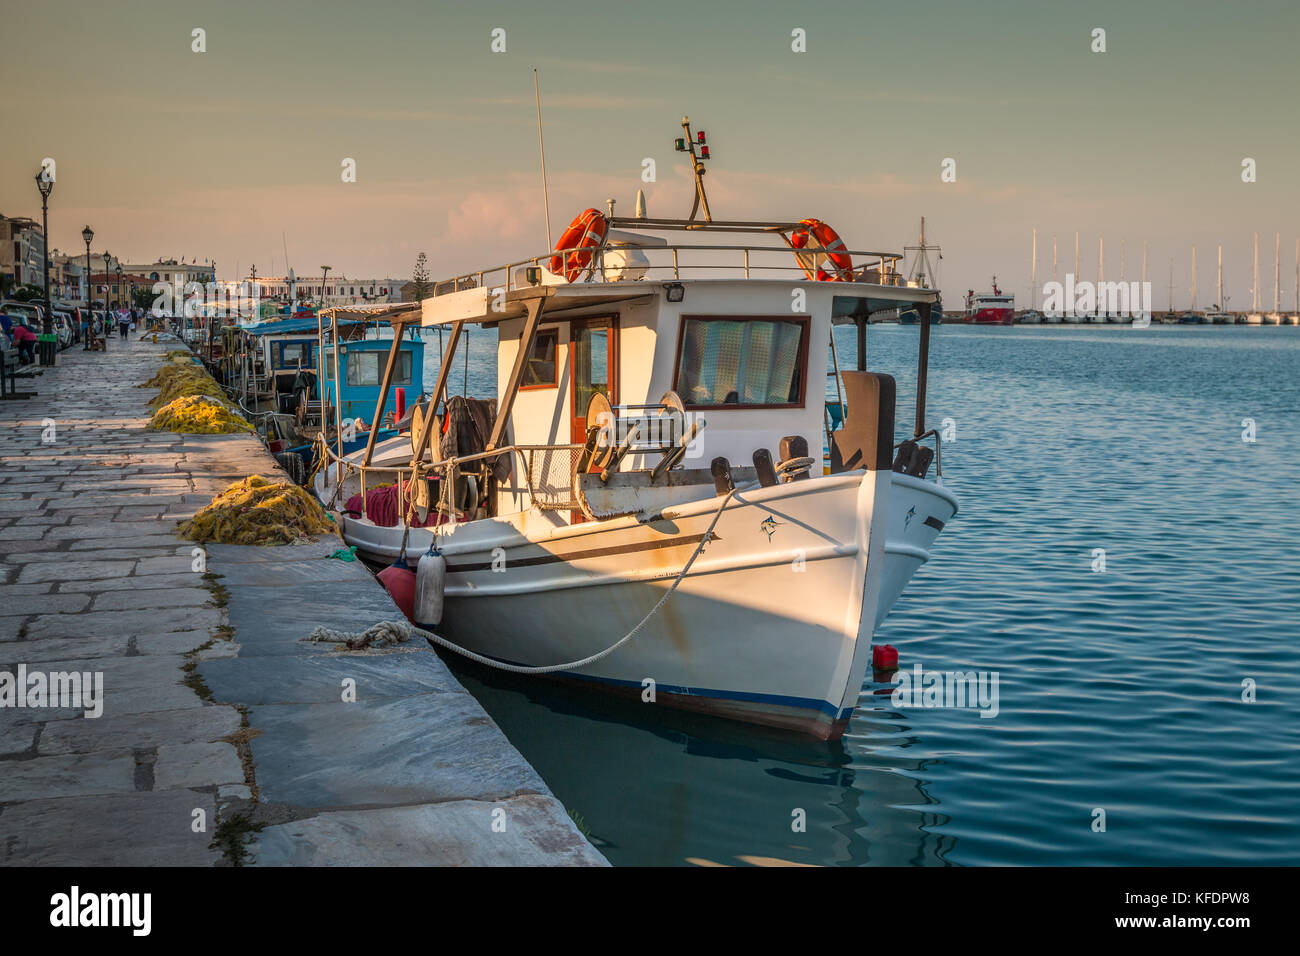 Boat in Zakunthos Greece Stock Photo